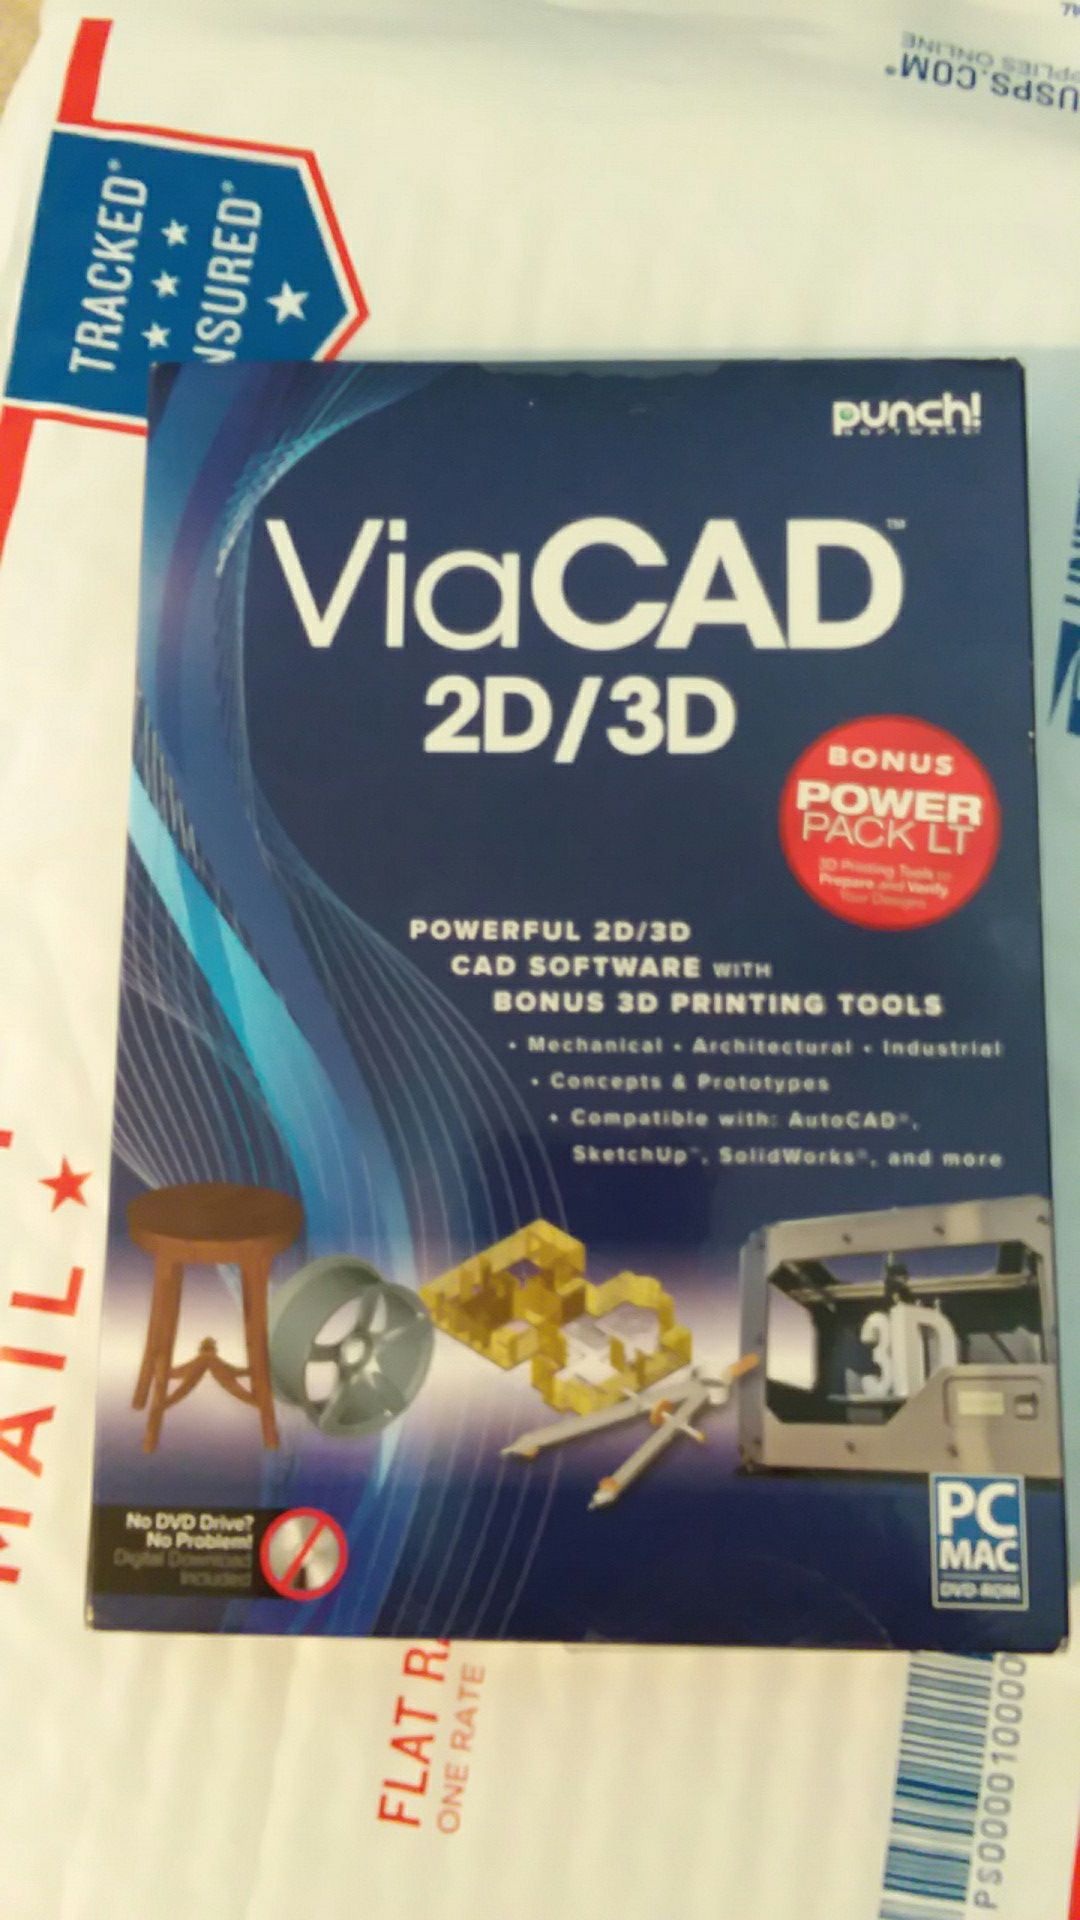 ViaCAD 2D/3D